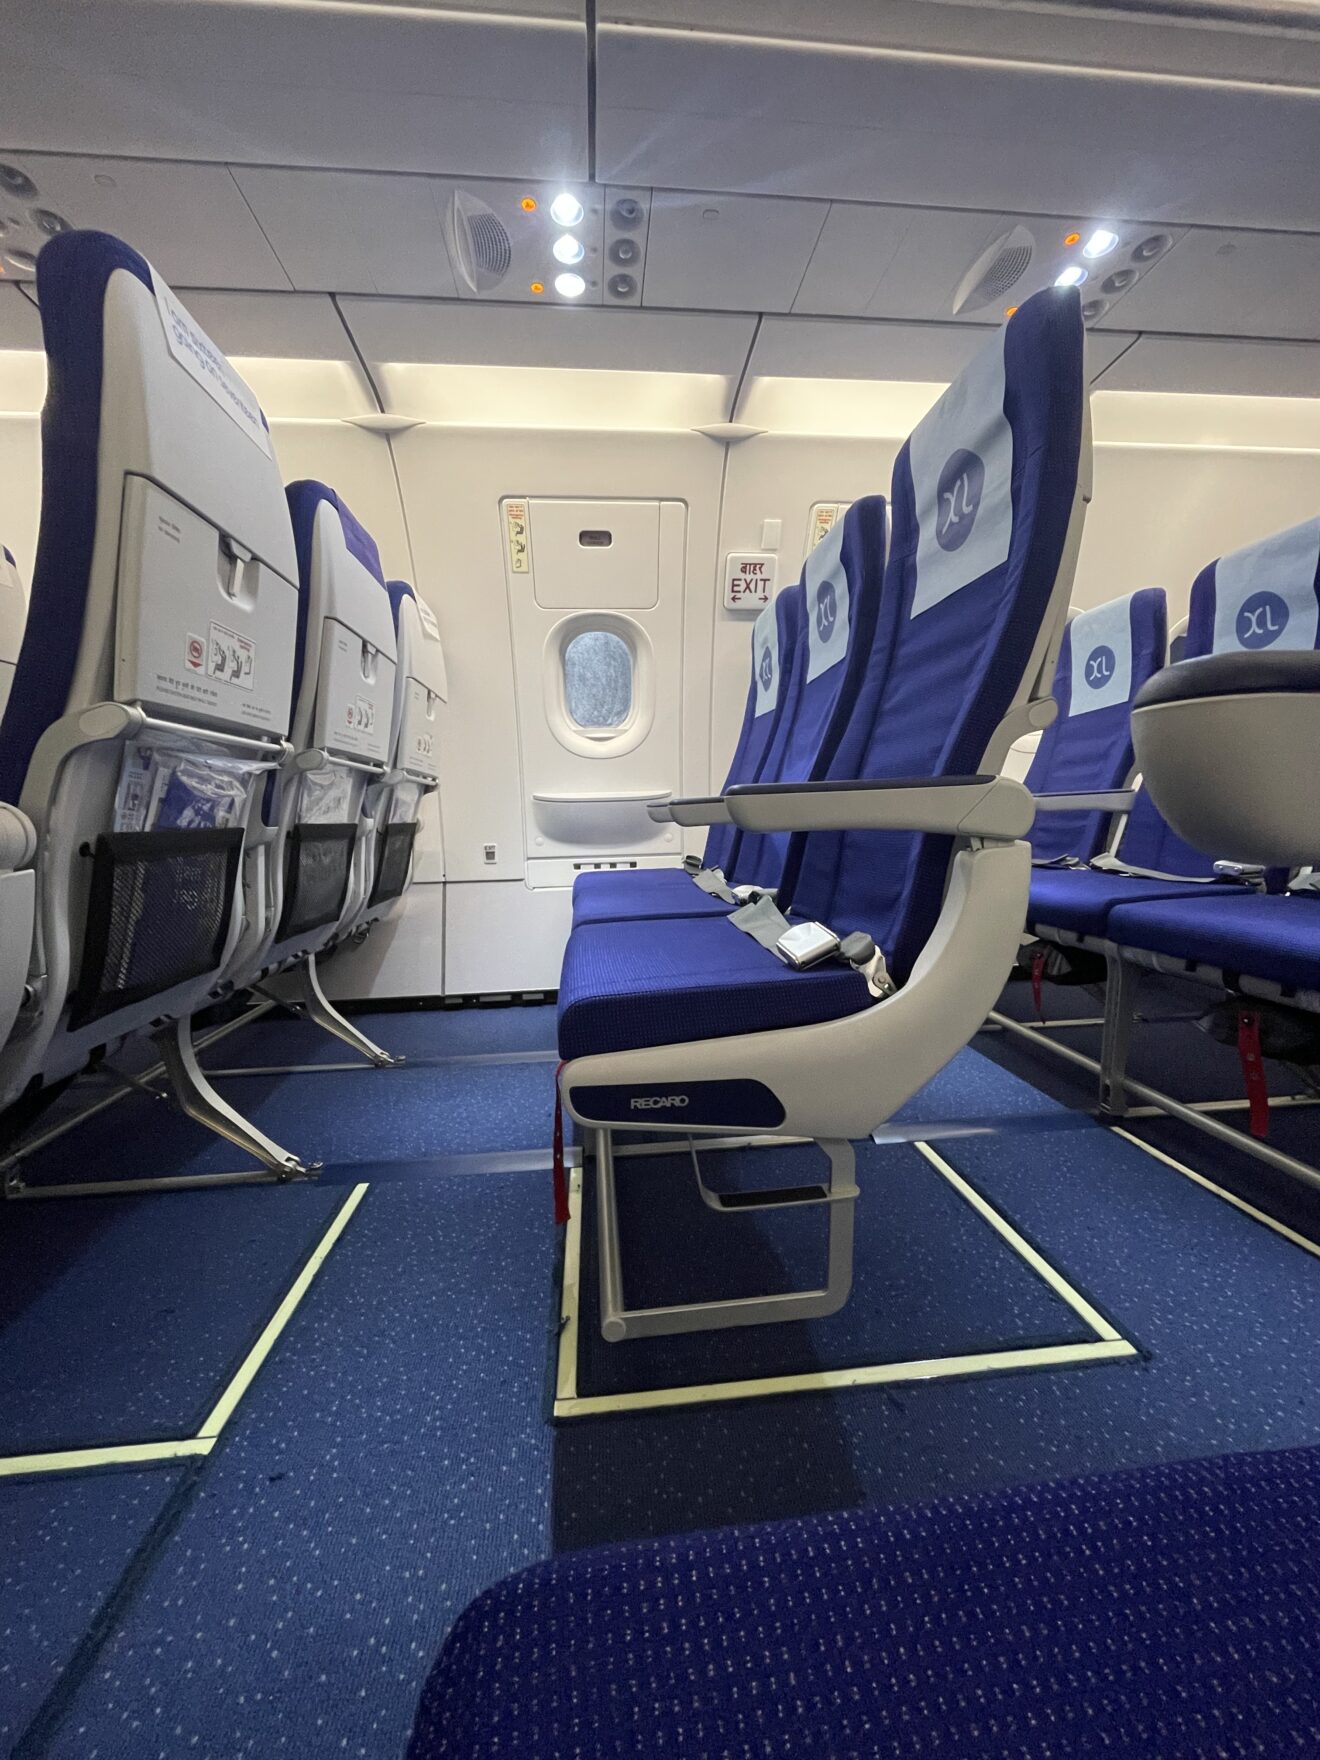 RECARO's BL3710 economy-class seats enter into service on IndiGo's A321neo